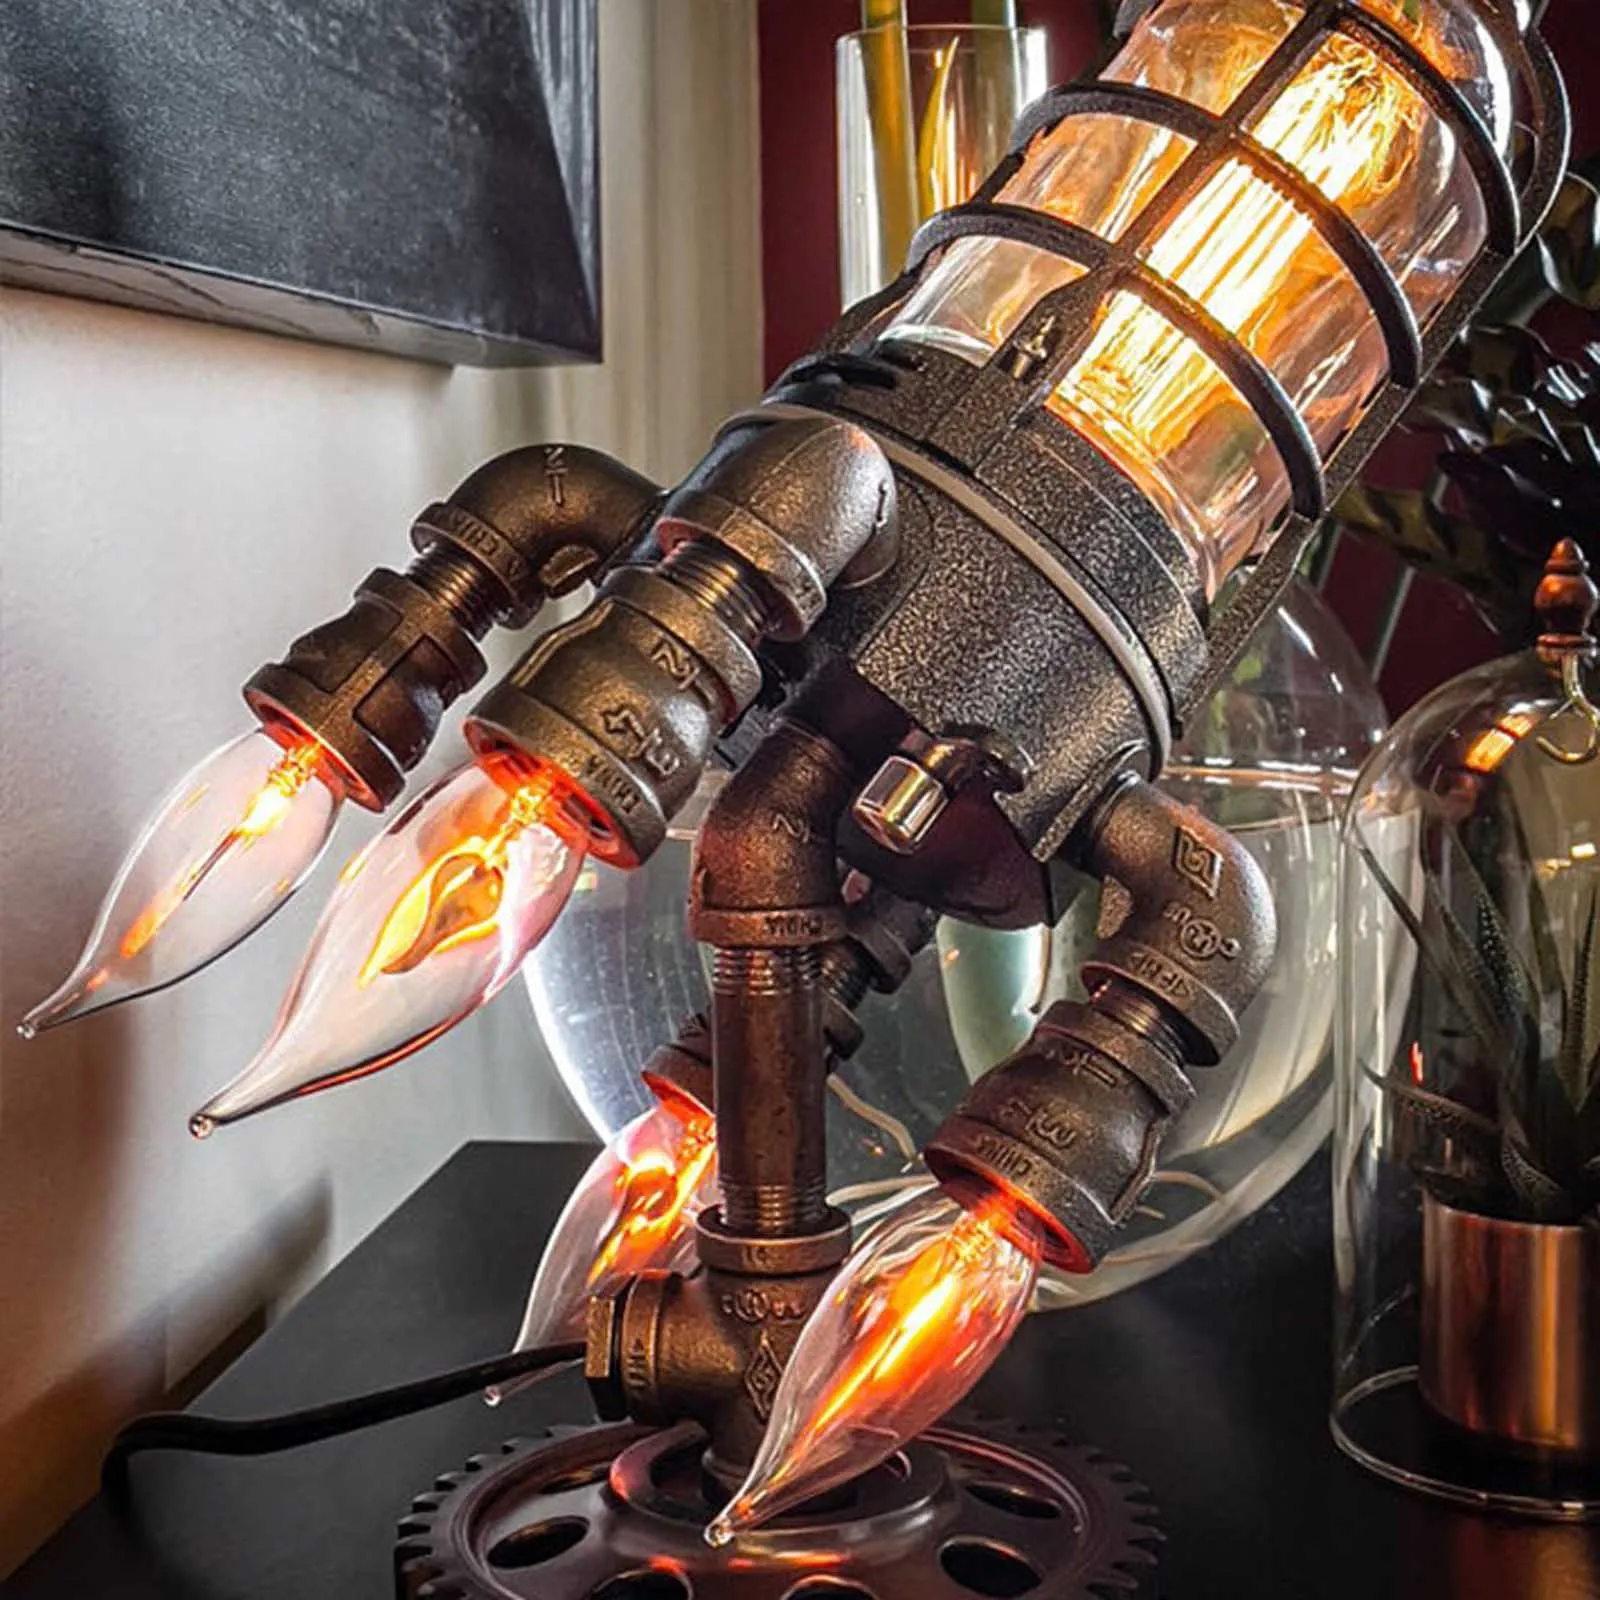 

Vintage Rocket Ship Lamp Steampunk Industrial Desk Night Lights Decoractive Bedside Table Light for Bar Bedroom Decor Kids Gifts